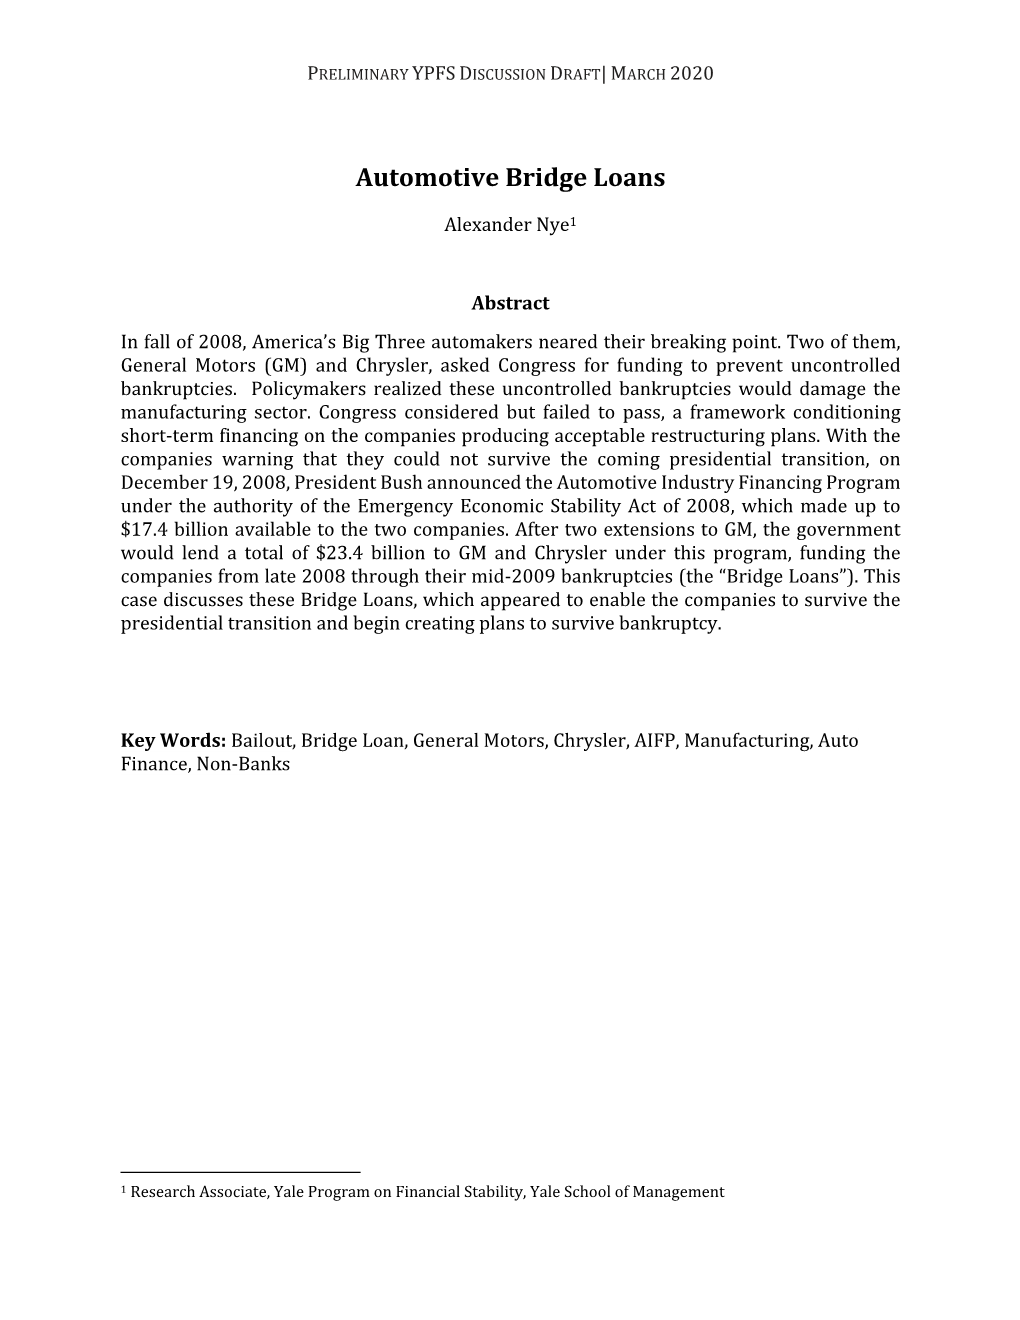 Automotive Bridge Loans